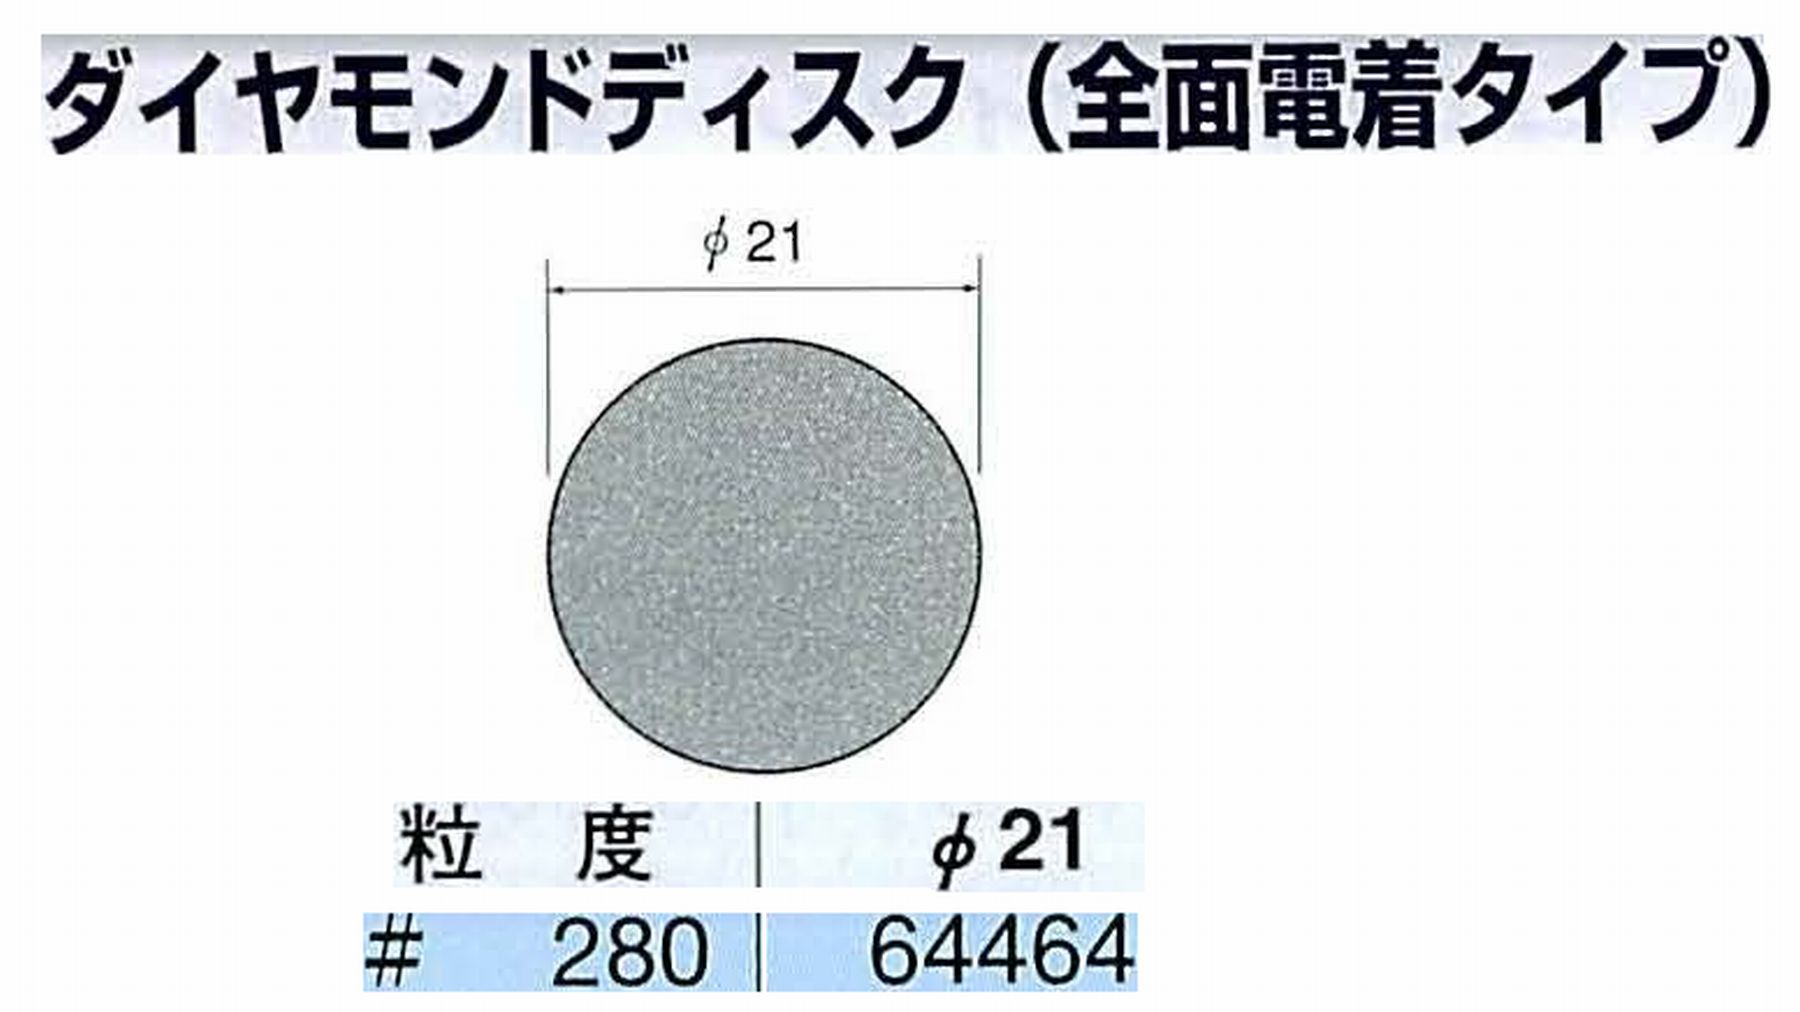 ナカニシ/NAKANISHI アングルグラインダ(電動・エアー) アングルアタッチメント専用工具 ダイヤモンドディスク(全面電着タイプ) 64464